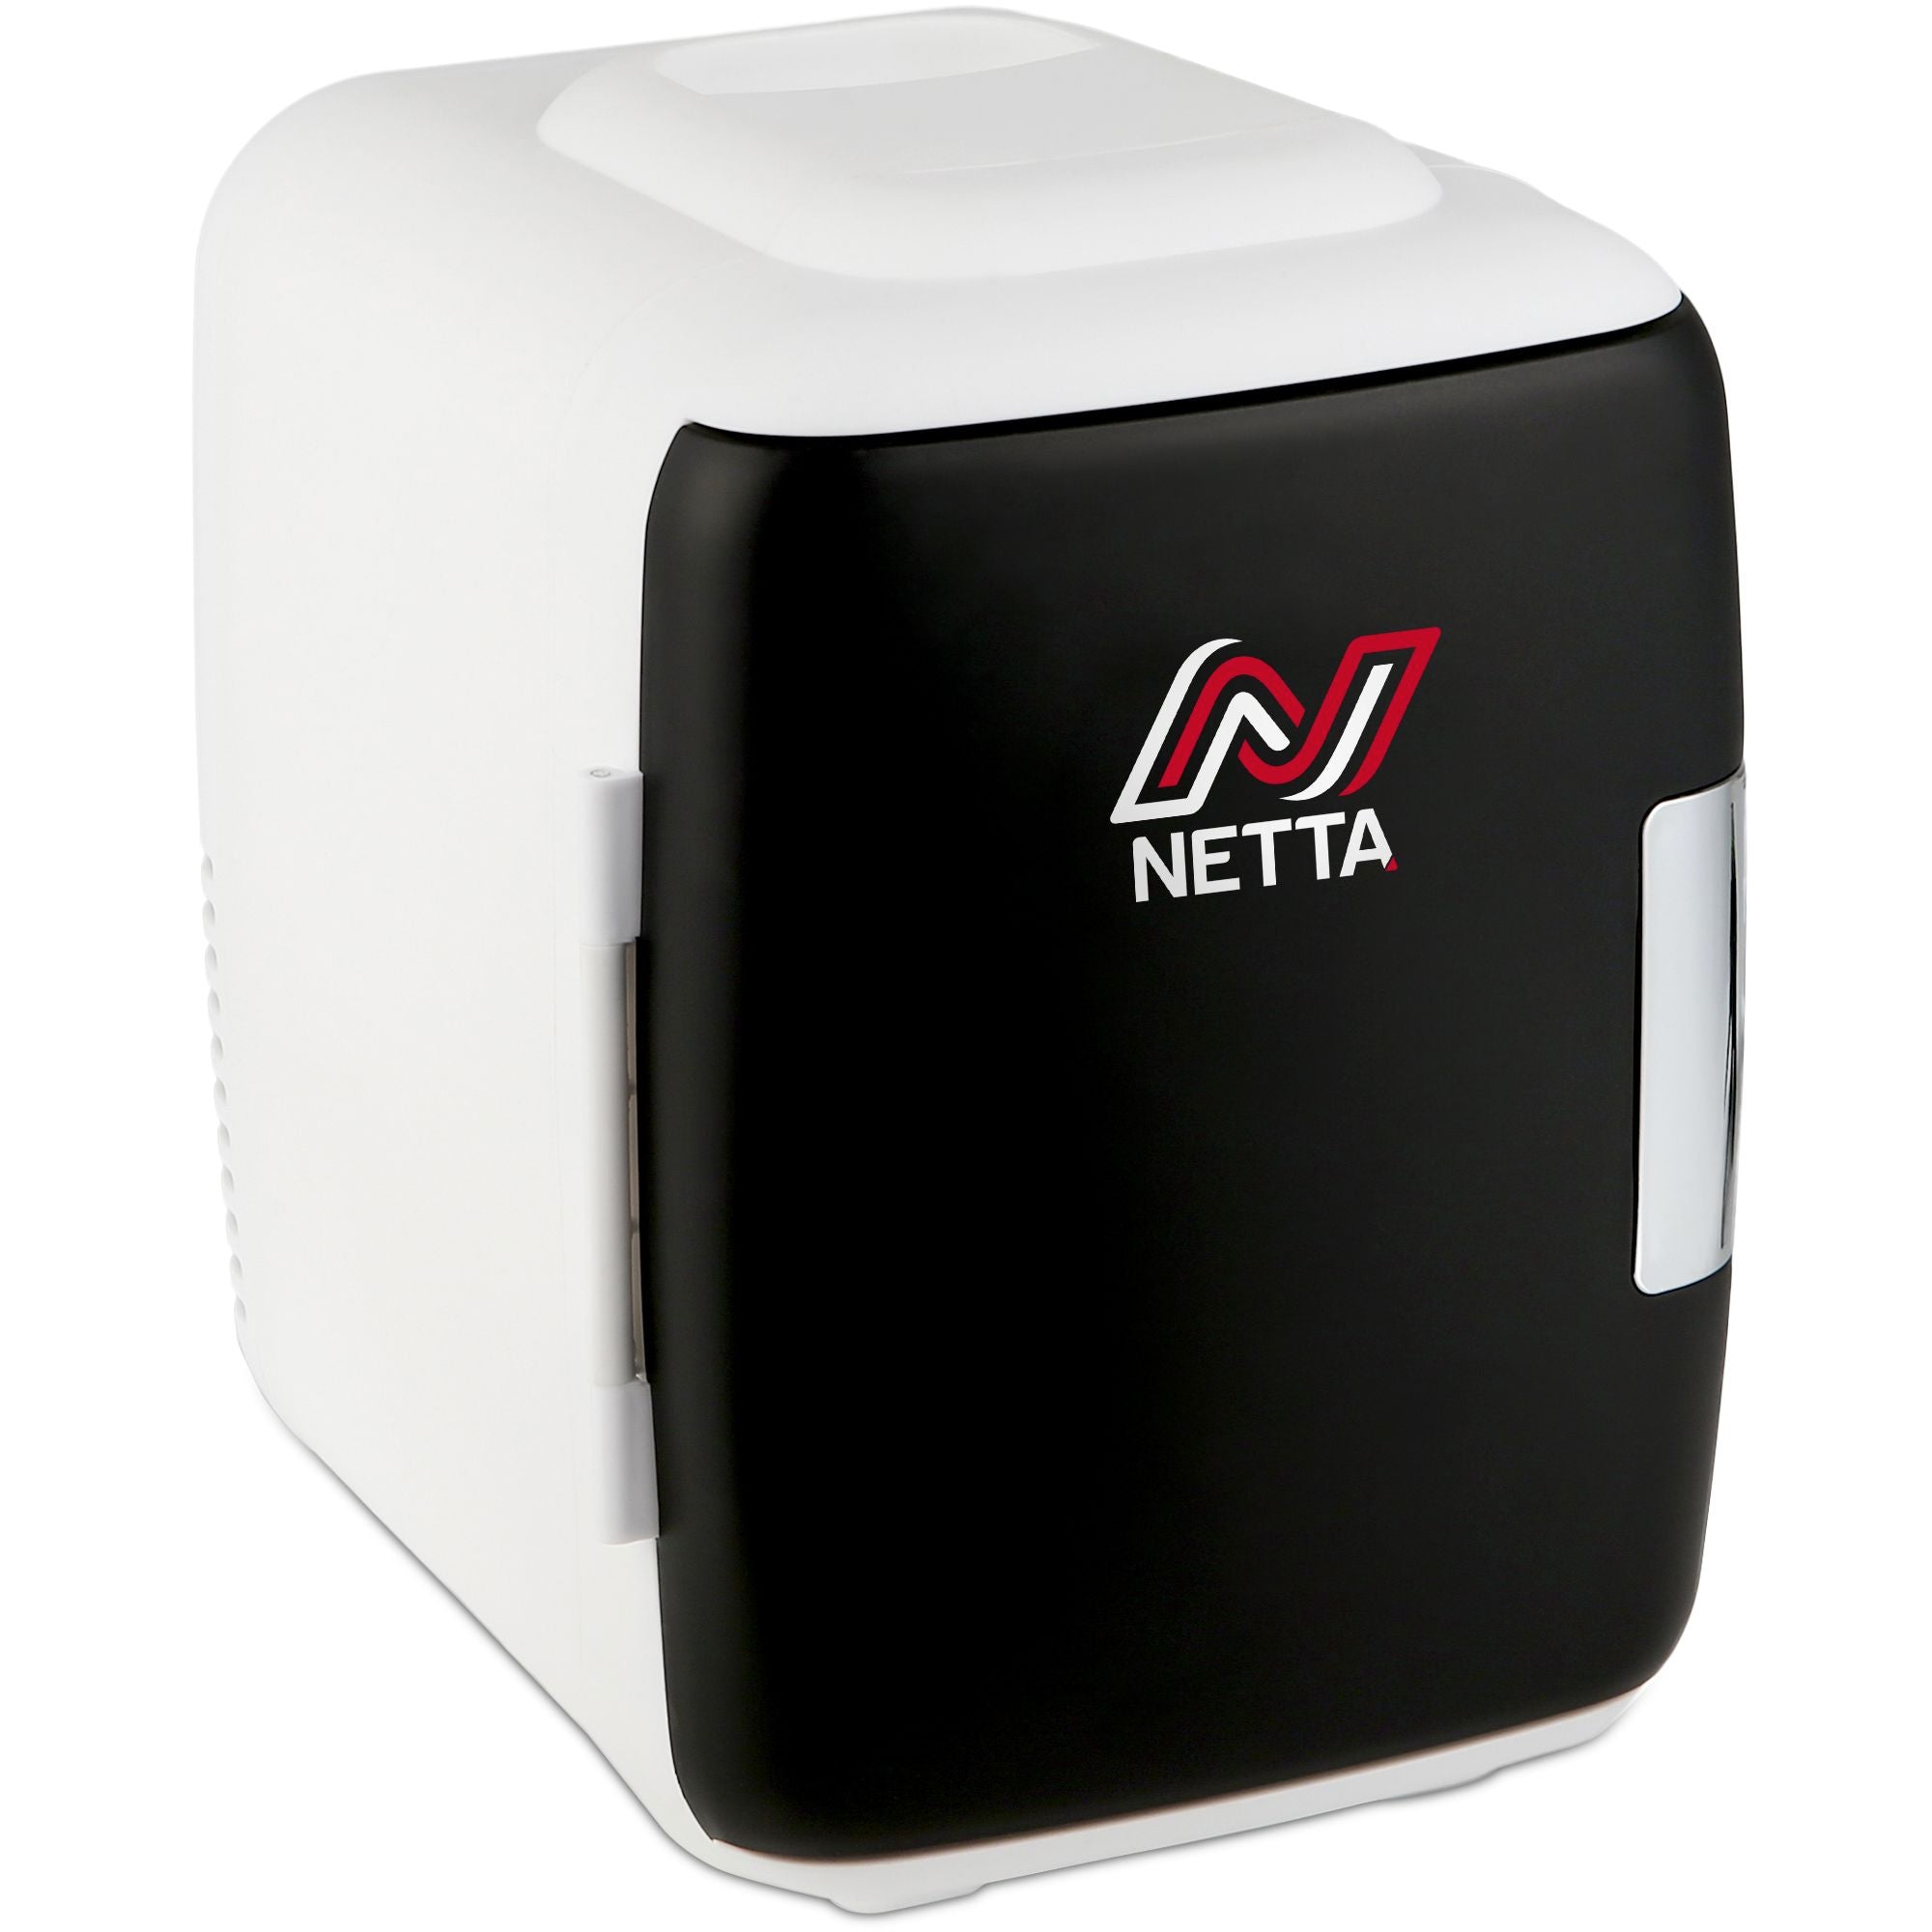 NETTA 5L Mini Fridge with 12V Car Socket and UK Main Plug  - Black & White